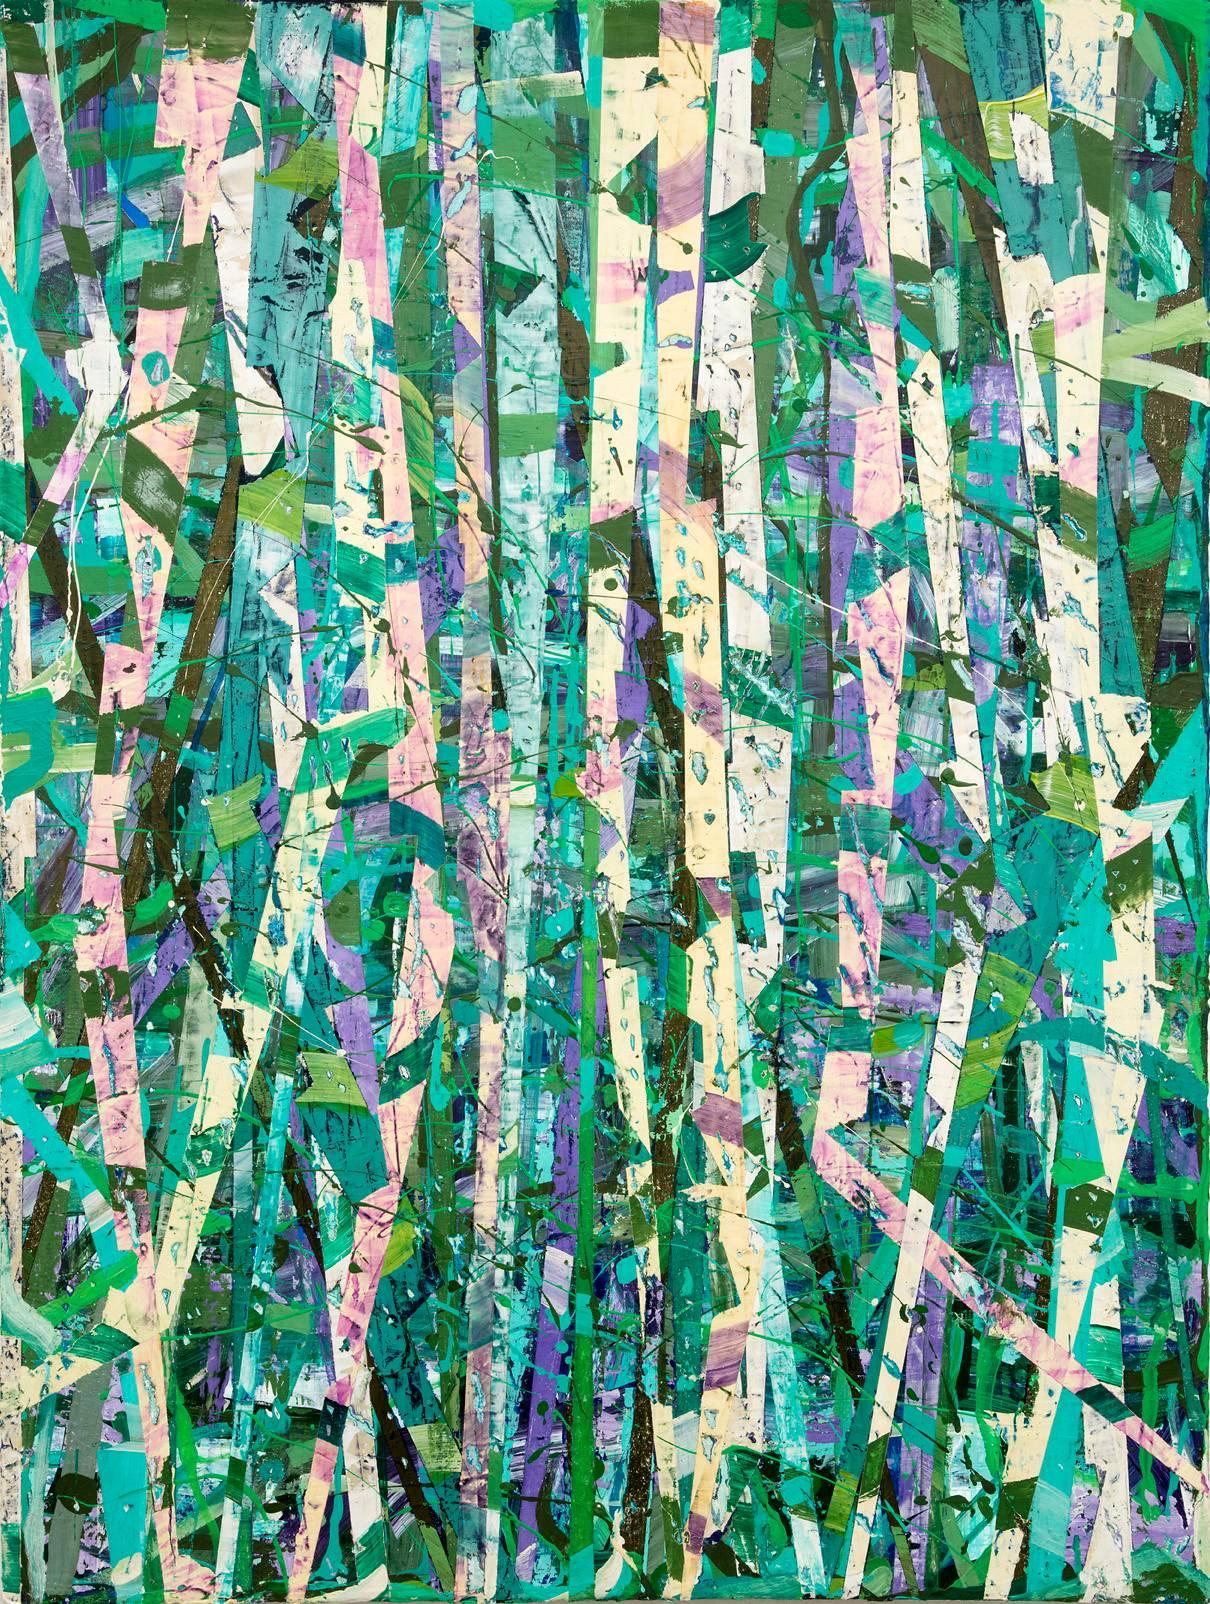 Taghkanic Creek, 14 mai (peinture abstraite moderne sur toile en vert et sarcelle) - Mixed Media Art de Vincent Pomilio